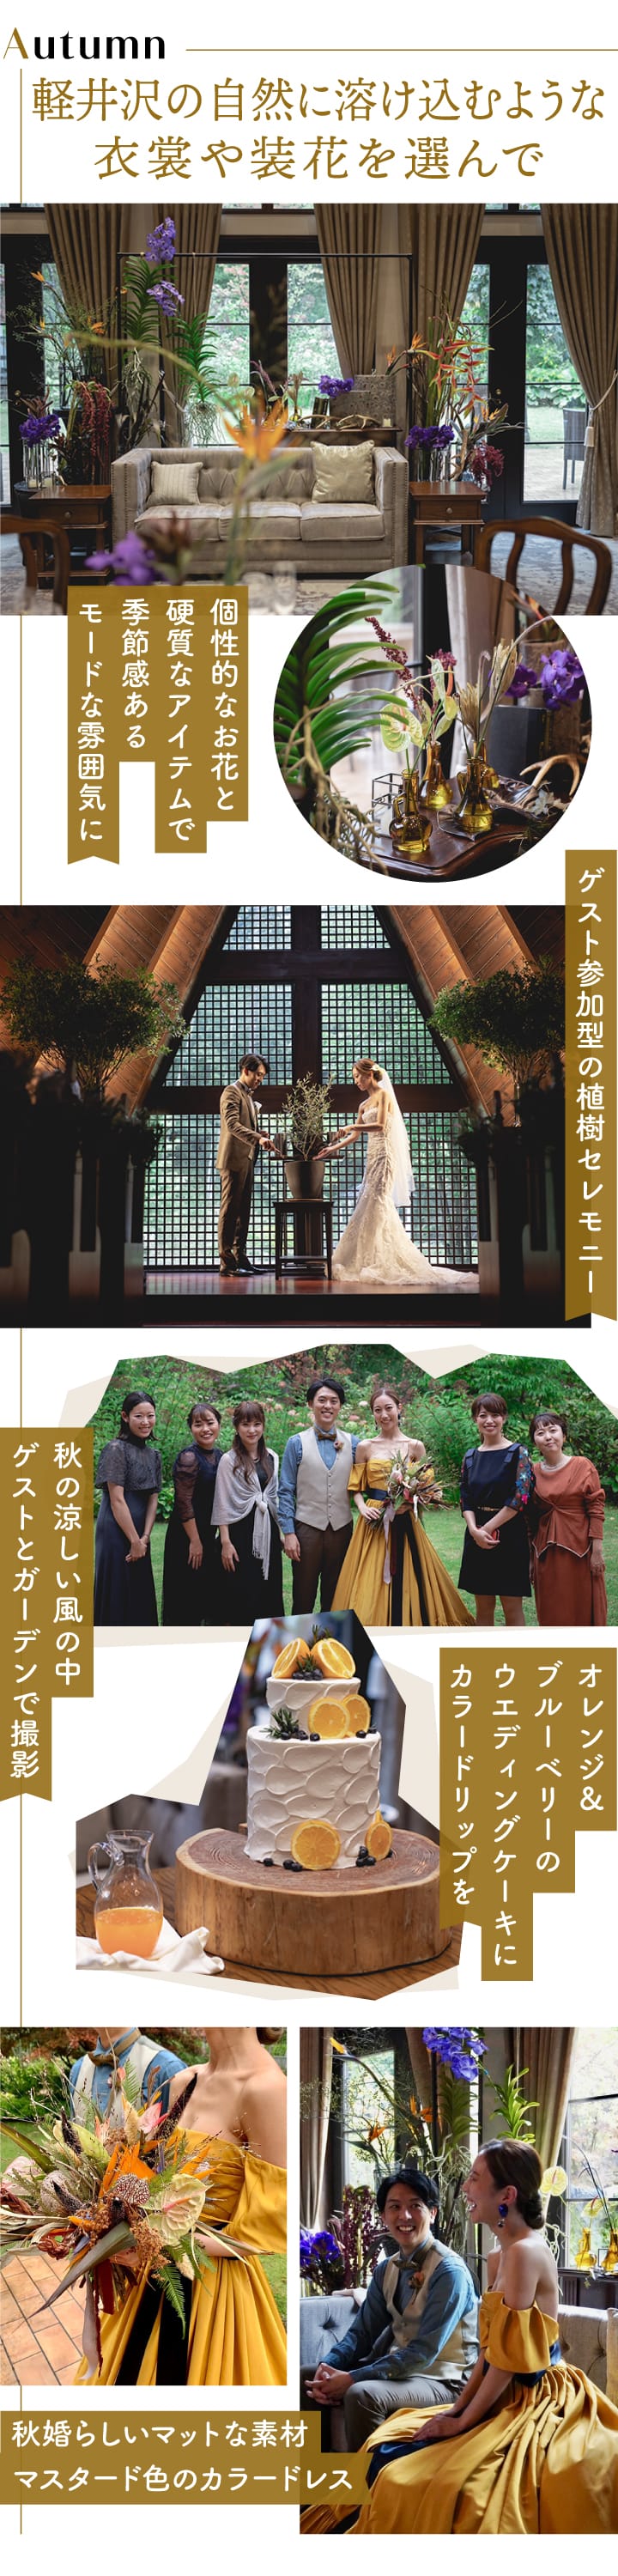 軽井沢の秋婚